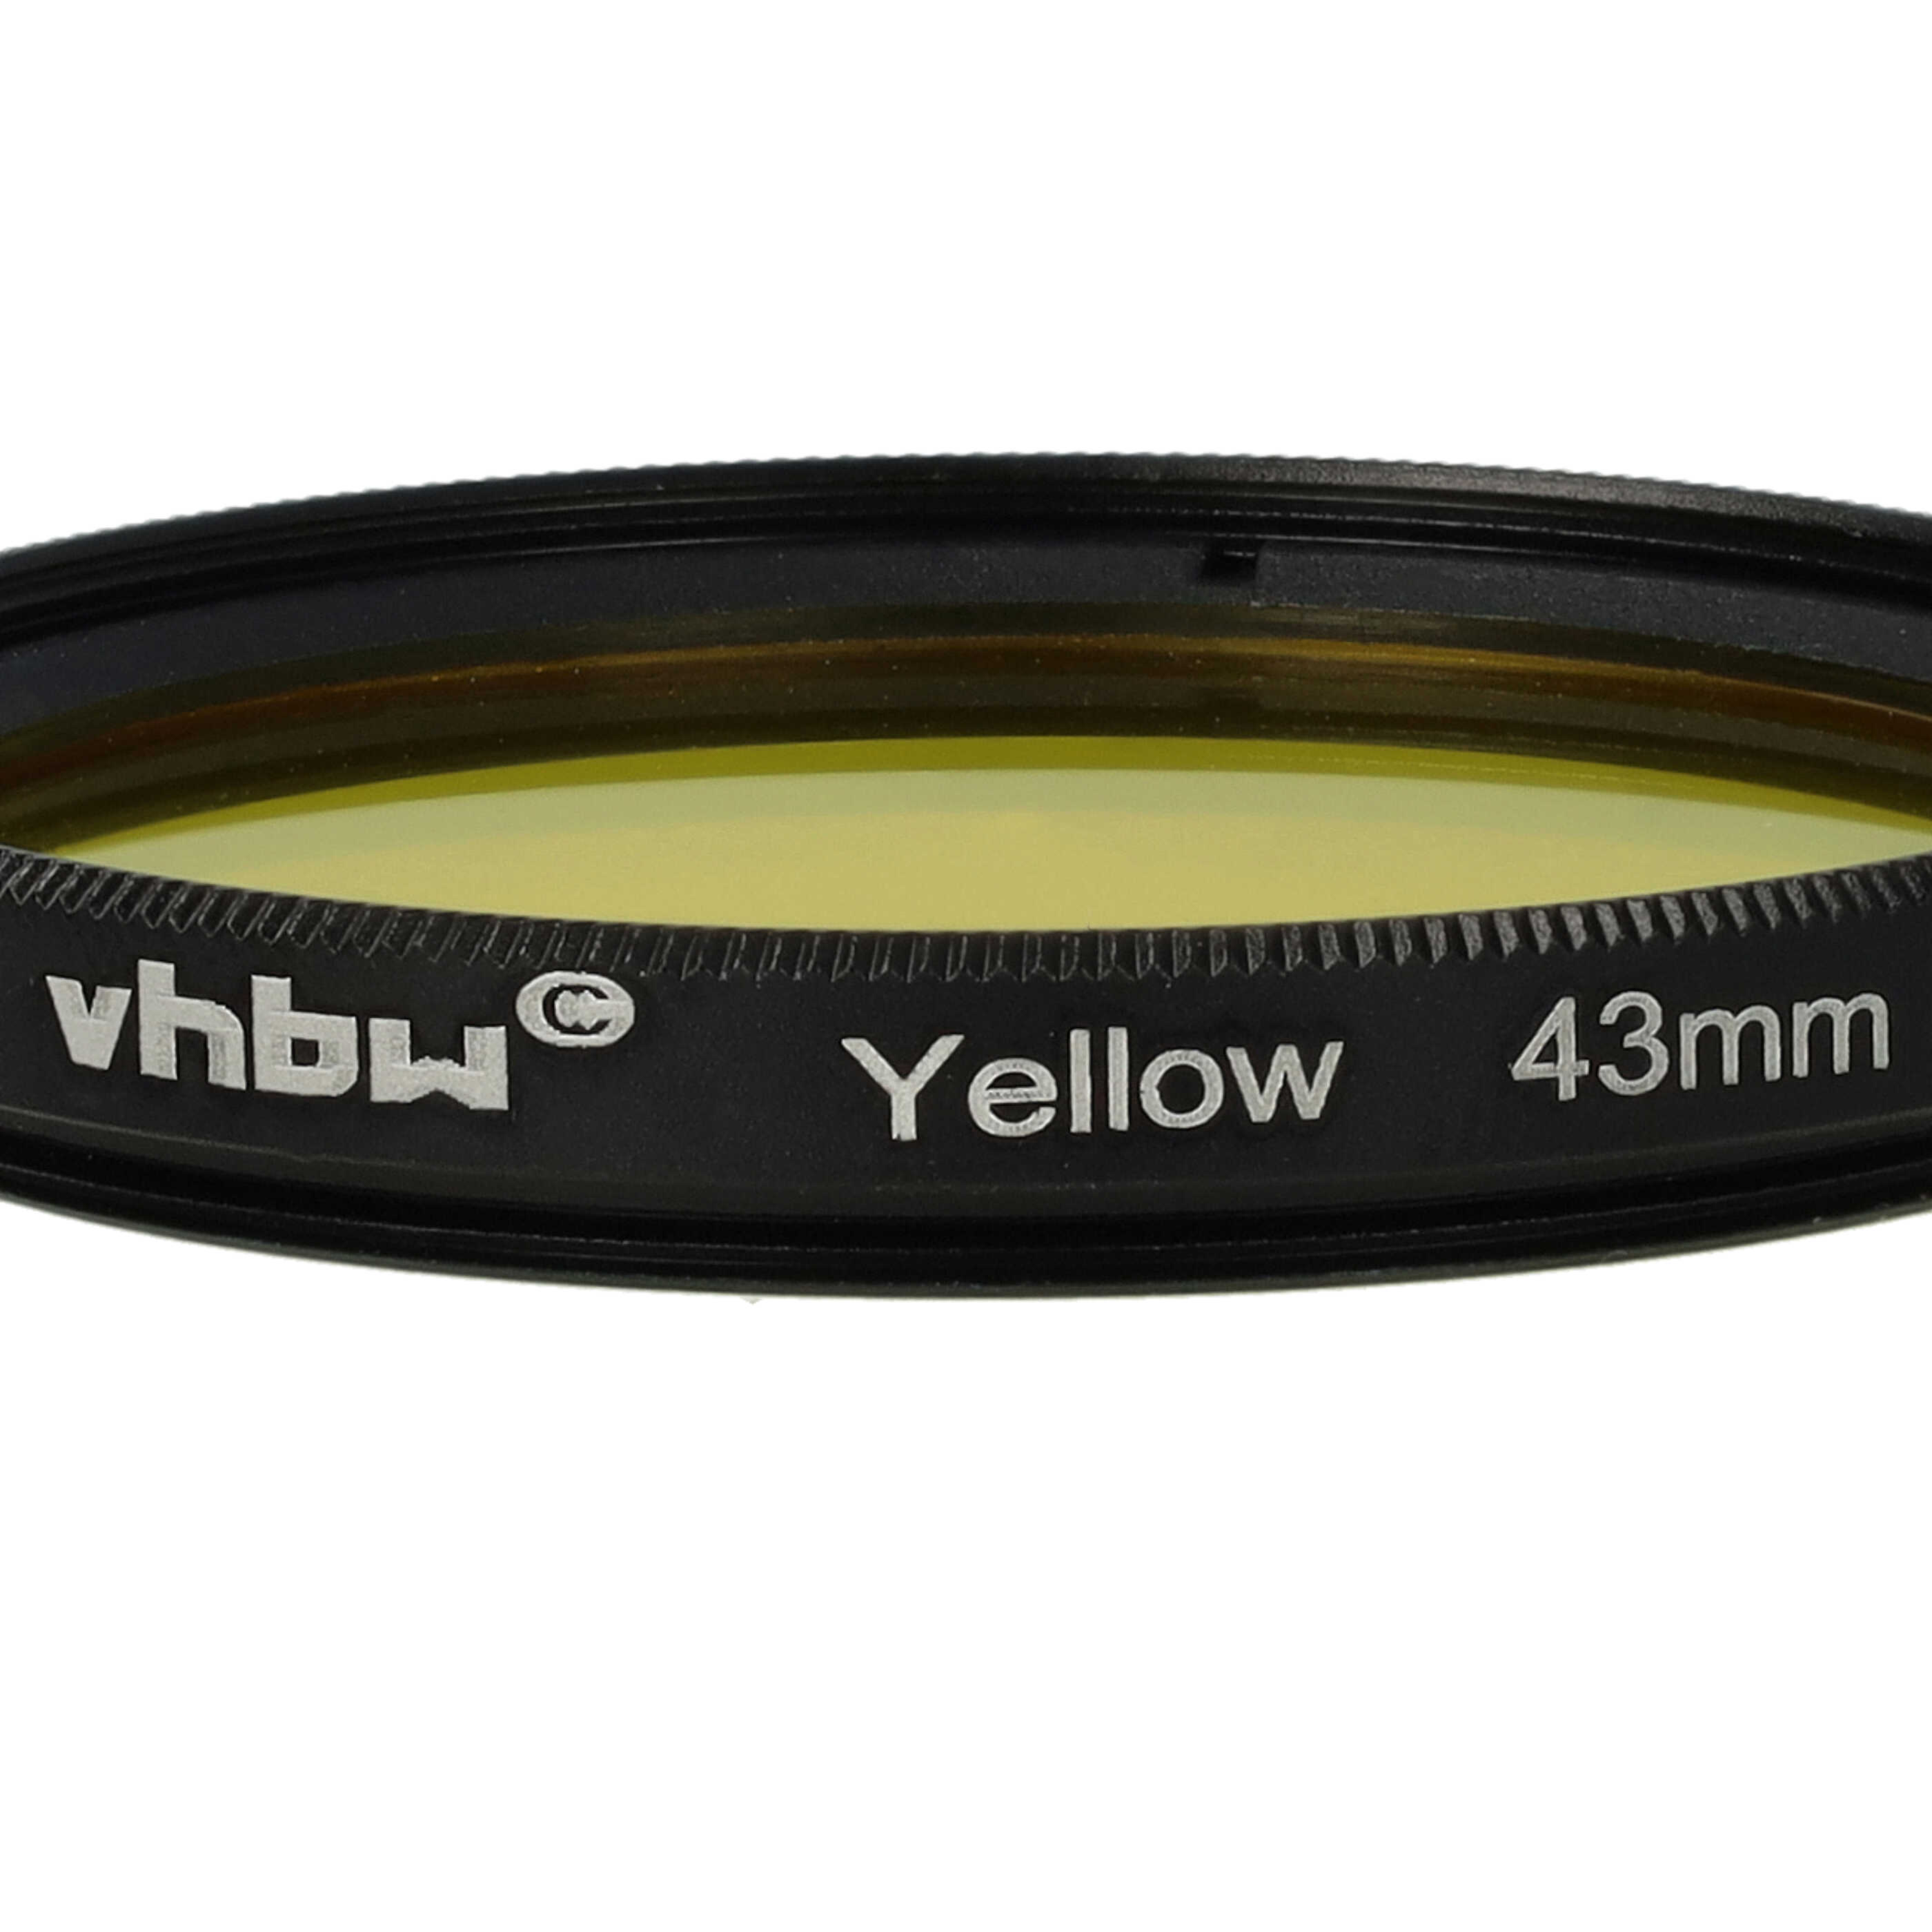 Filtro colorato per obiettivi fotocamera con filettatura da 43 mm - filtro giallo